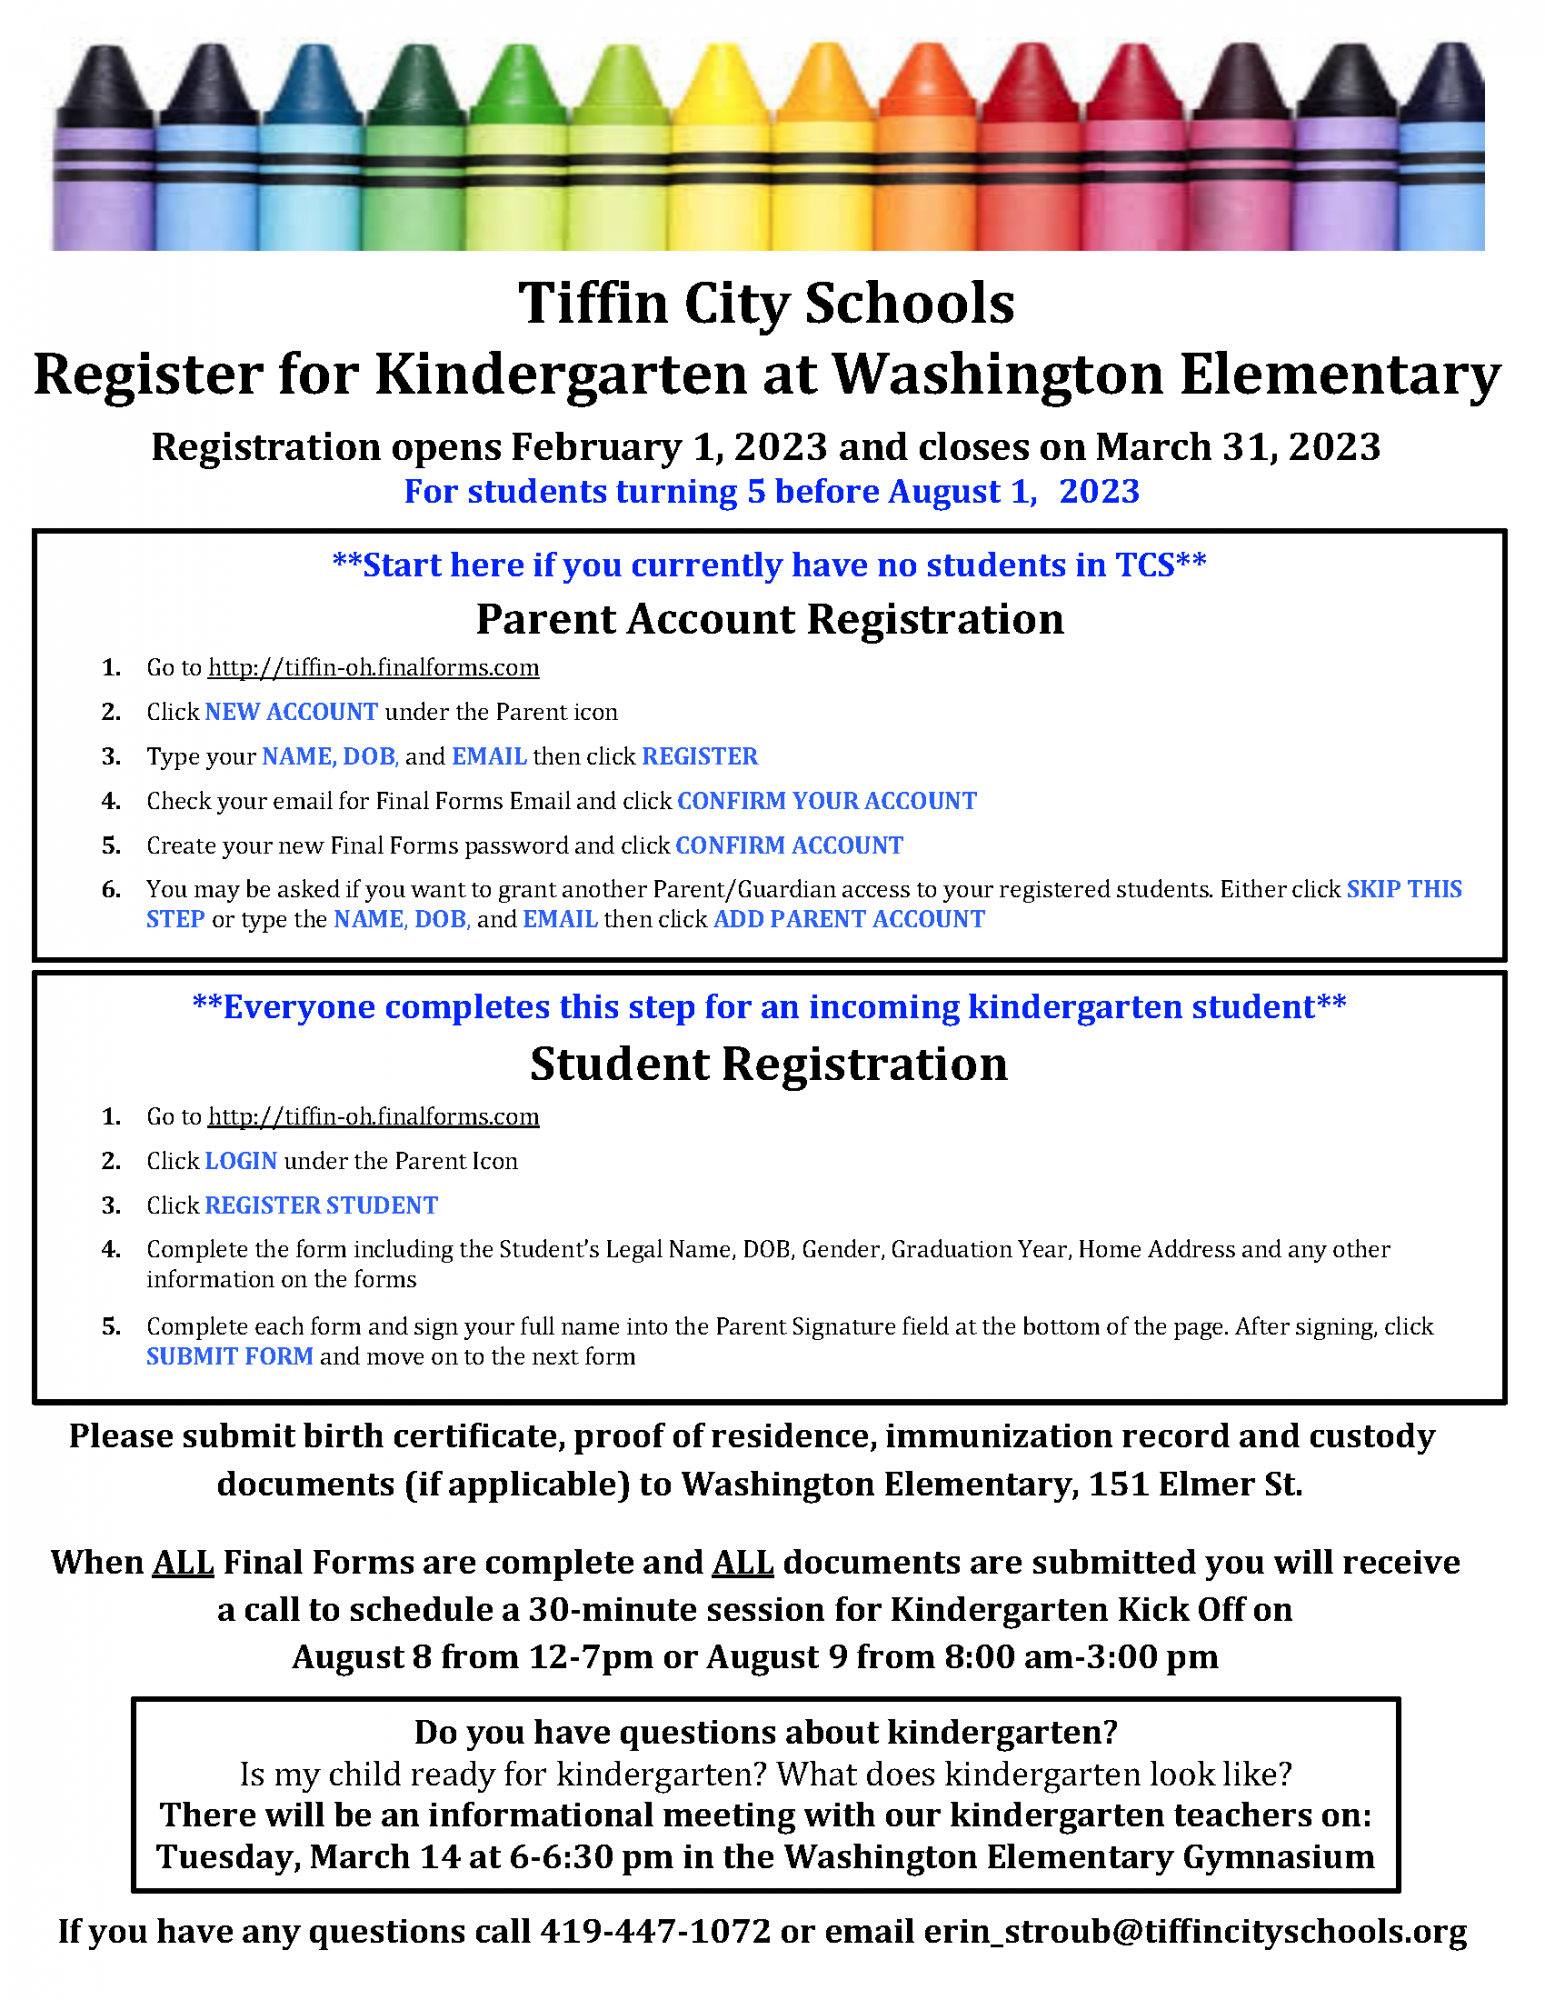 Kindergarten Registration for 2023-2024